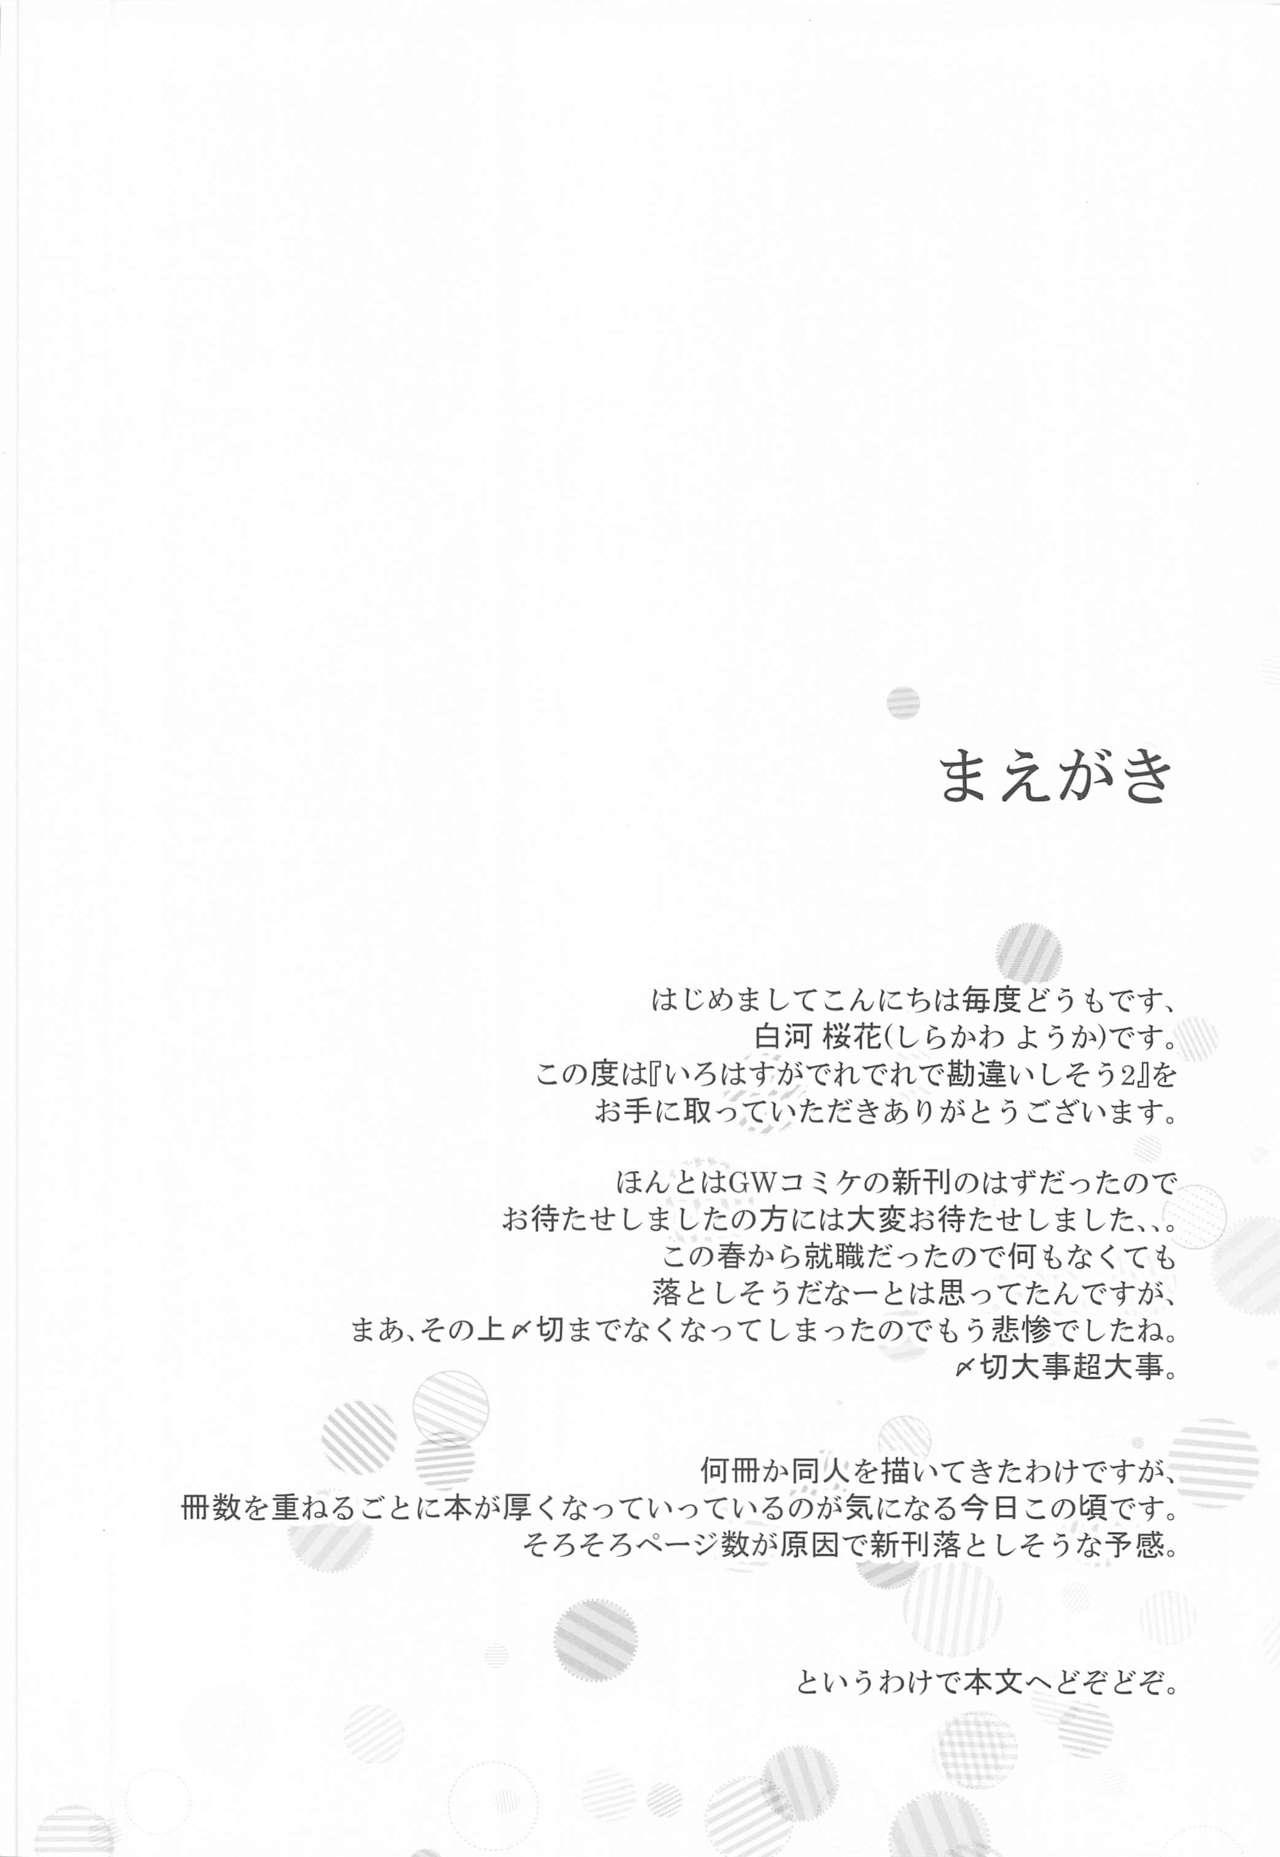 Bunda Irohasu ga Deredere de Kanchigai Shisou 2 - Yahari ore no seishun love come wa machigatteiru Pija - Page 3